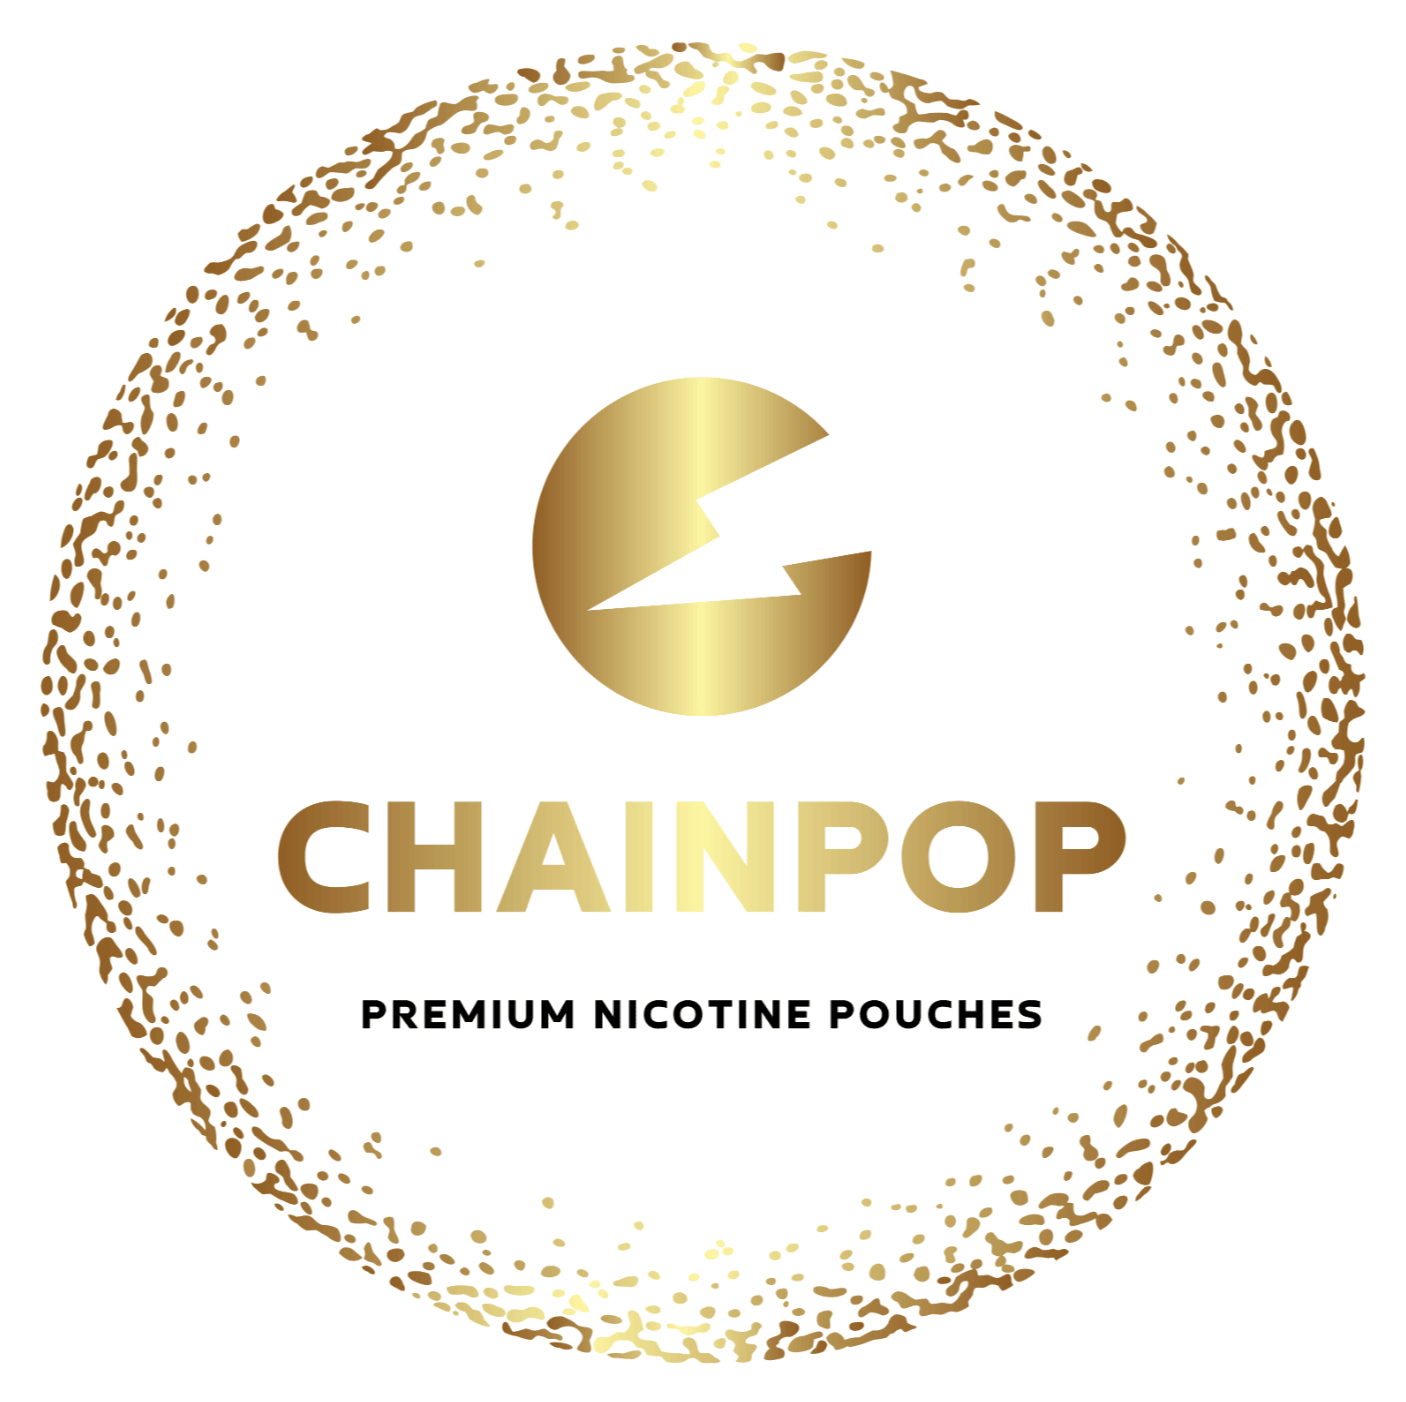 Chainpop nikotino maišeliai logo